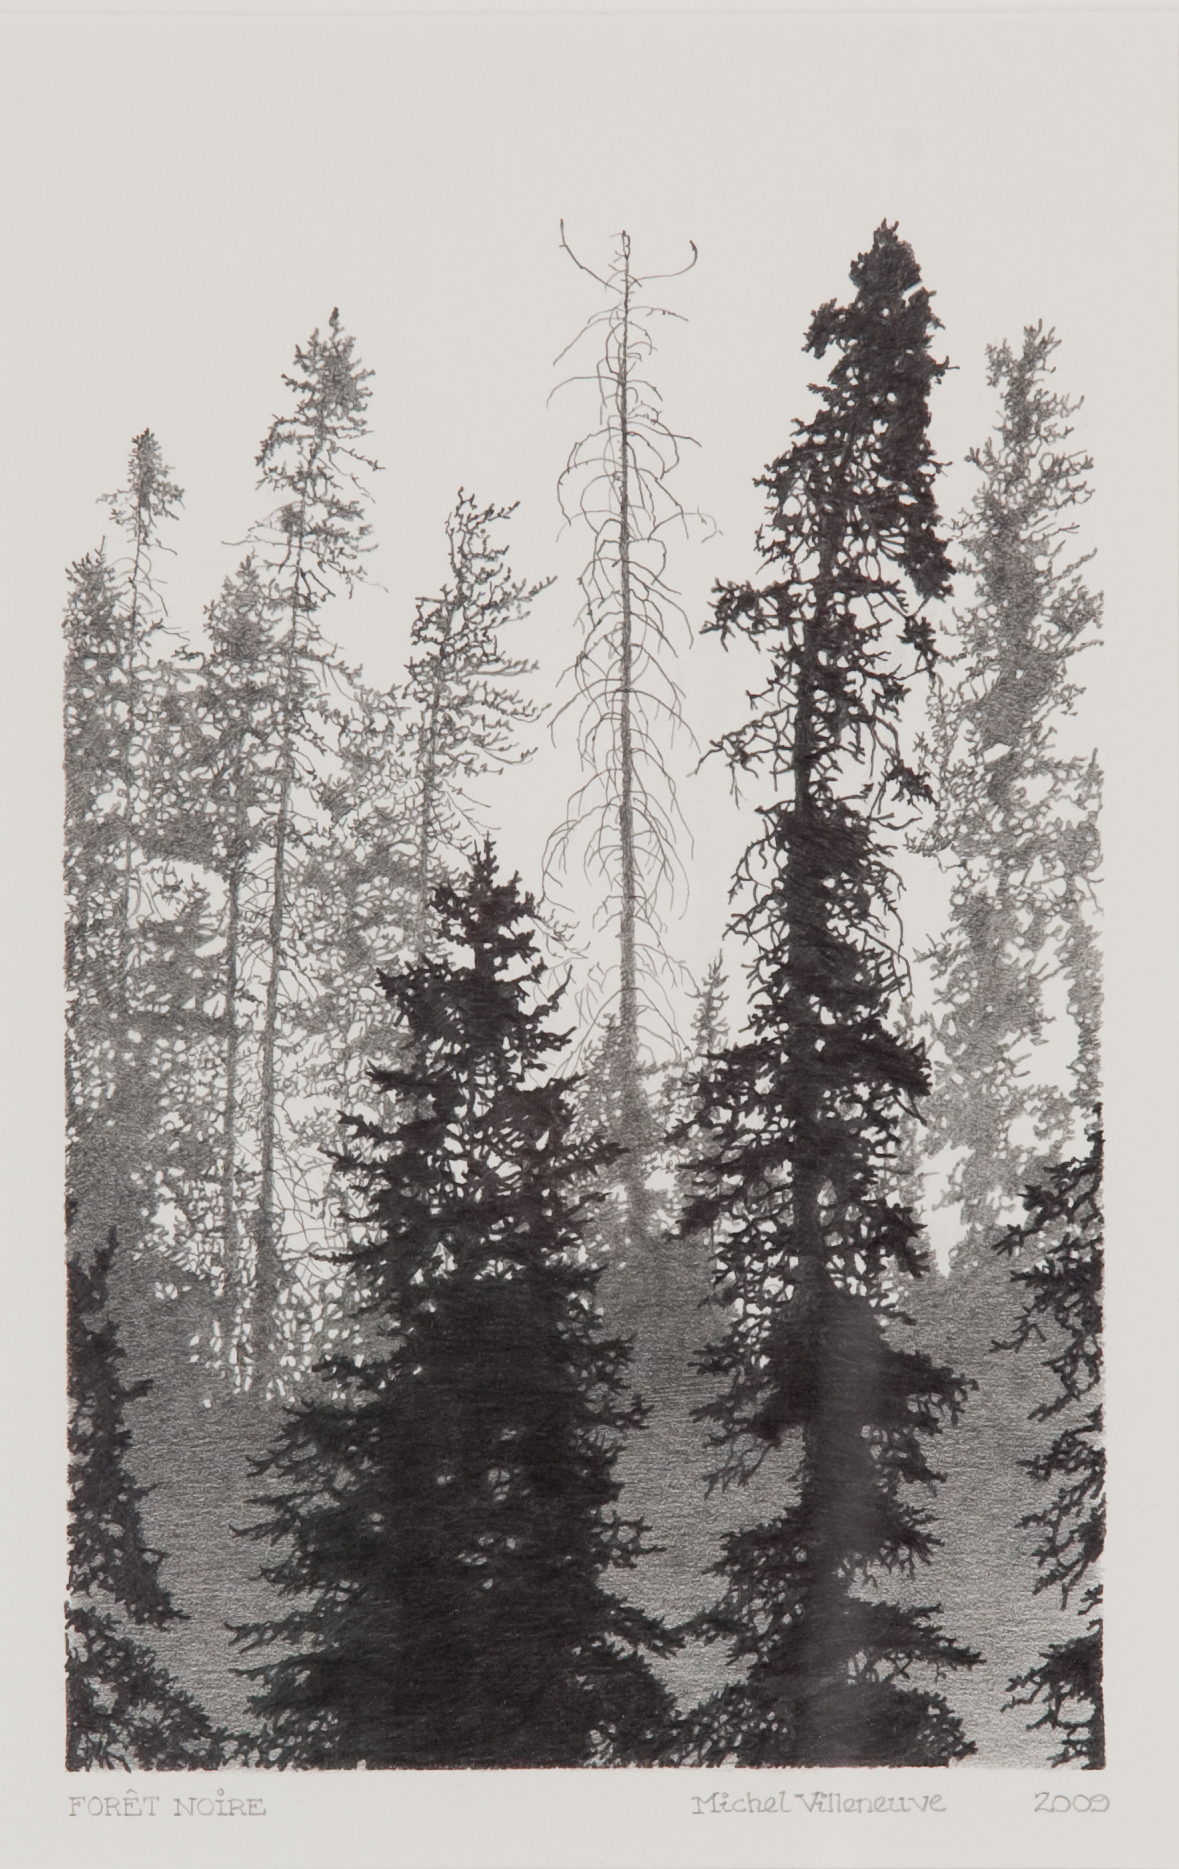 Dessin noir et blanc représentant deux conifères en avant-plan, devant une forêt de conifères en arrière-plan. 